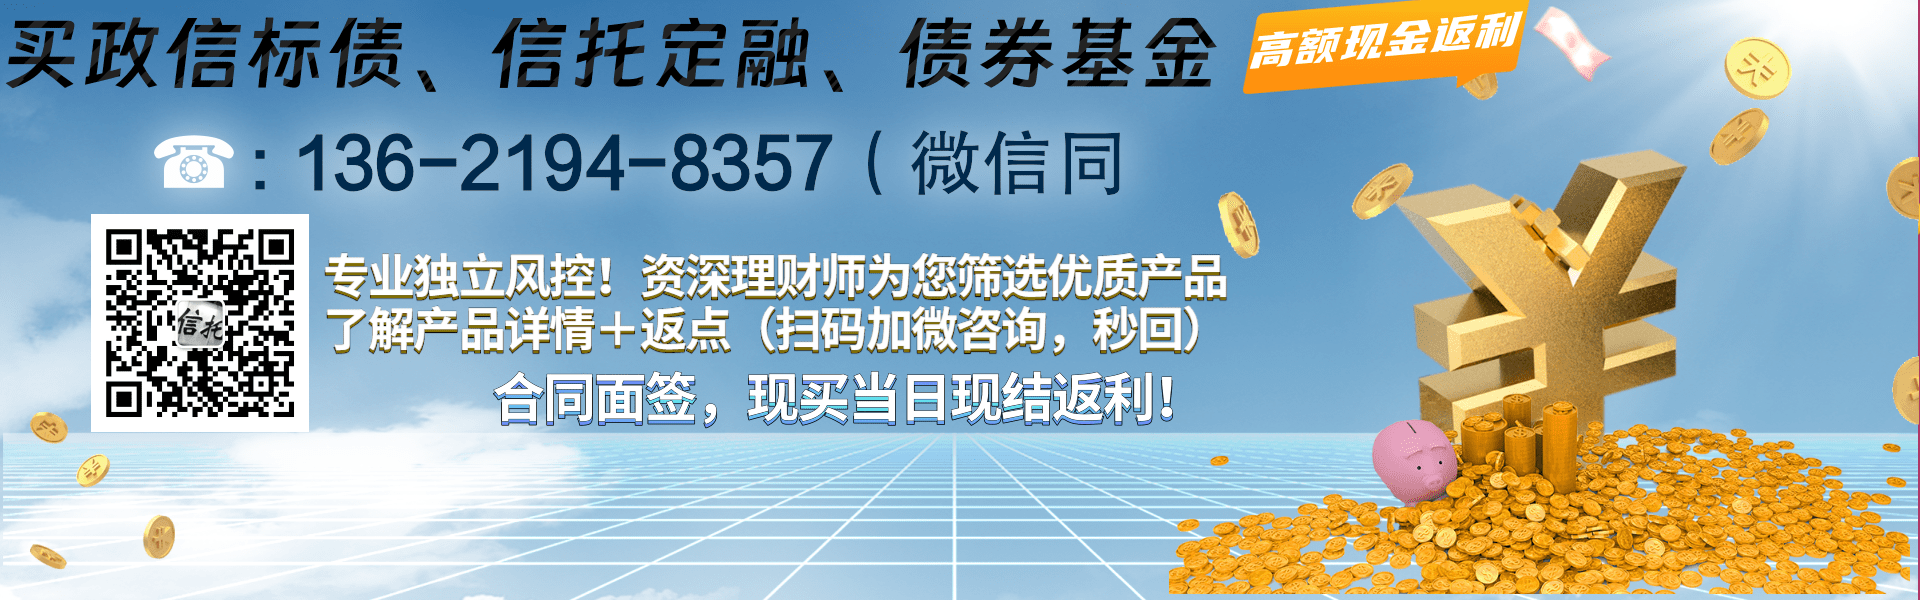 央企信托·171号潍坊地级市标债集合资金信托计划